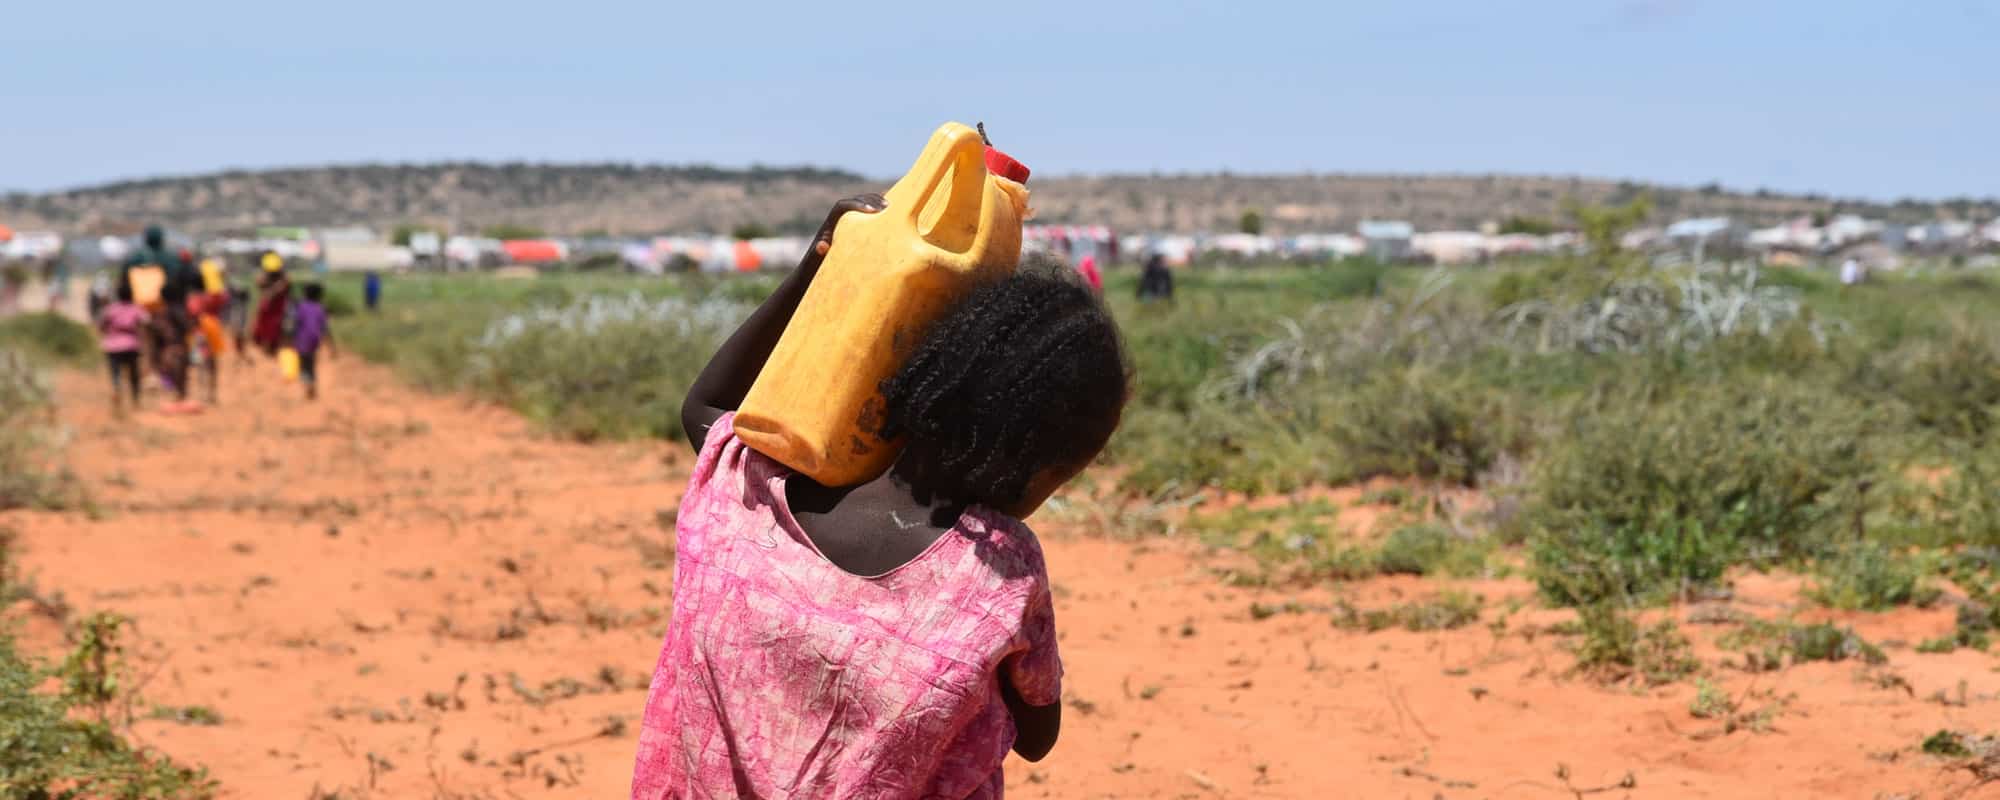 Jente fra Somaliland, med rosa kjole og flettet hår, bærer ei gul vannkanne på skuldrene. Foran henne er det en gruppe mennesker som også bærer vann og en teltleir. Foto: Carl Gustav Lorentsen